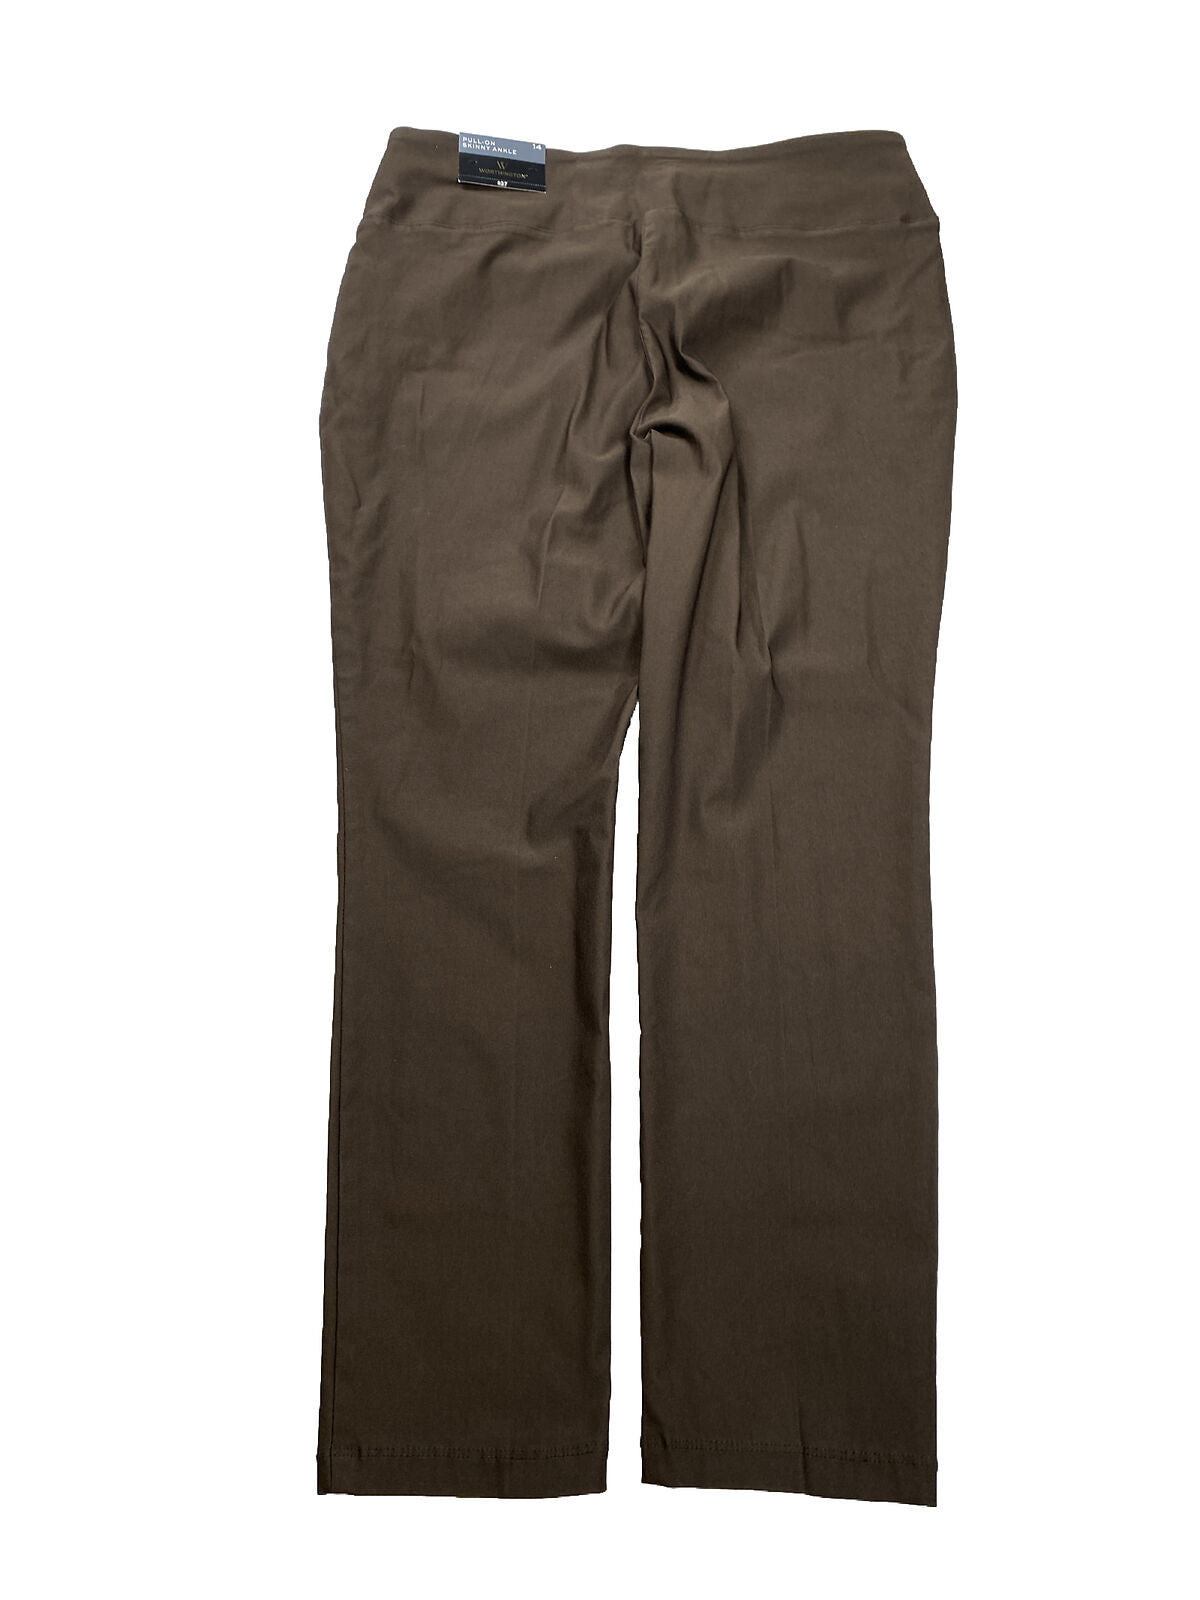 NUEVO Pantalones tobilleros ajustados y sin cordones en color marrón Worthington para mujer - 14